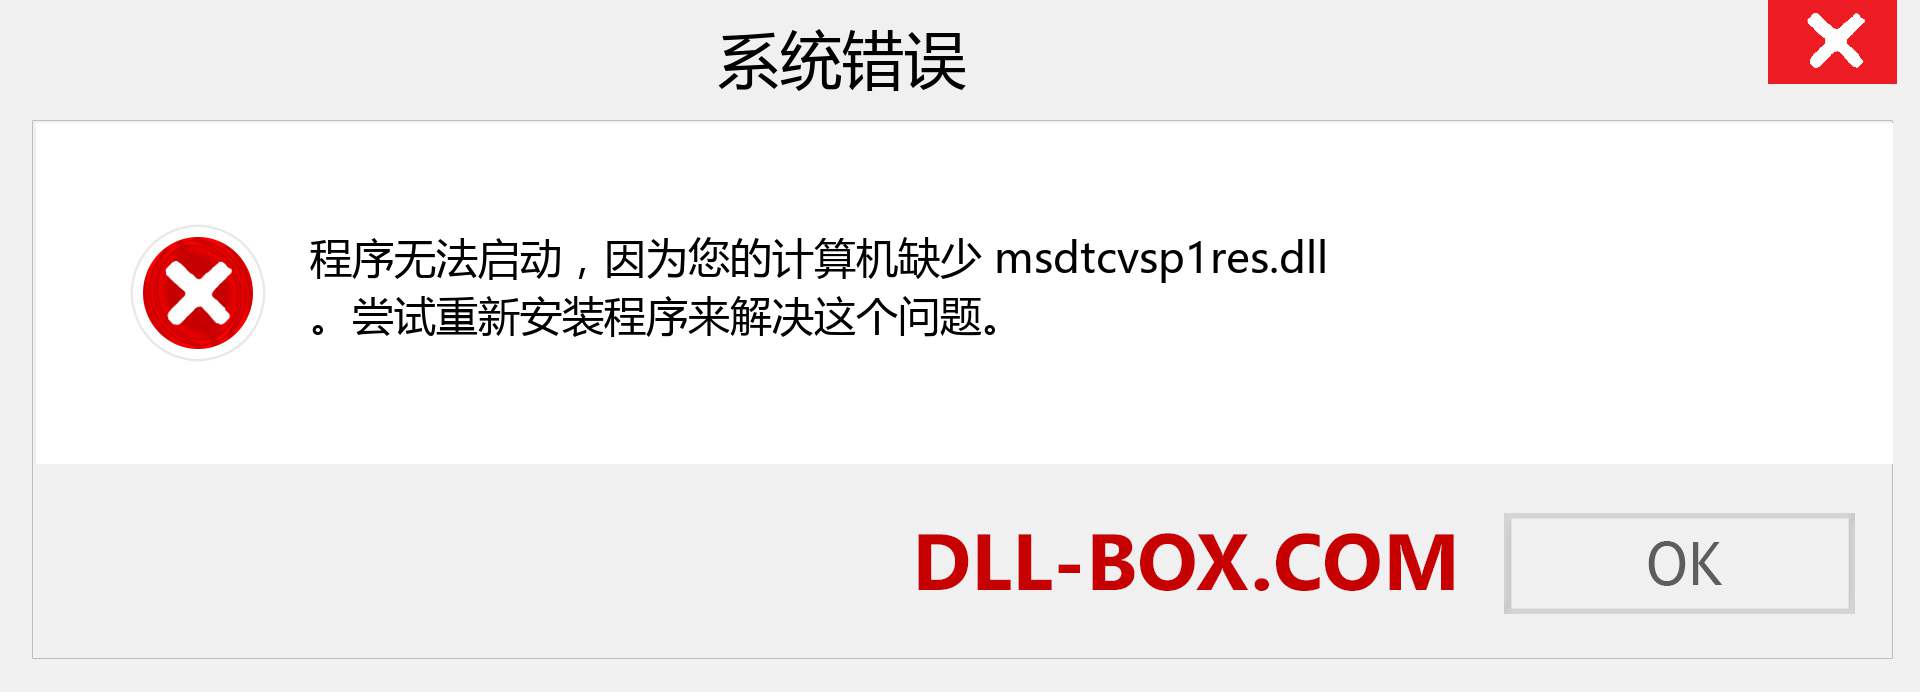 msdtcvsp1res.dll 文件丢失？。 适用于 Windows 7、8、10 的下载 - 修复 Windows、照片、图像上的 msdtcvsp1res dll 丢失错误